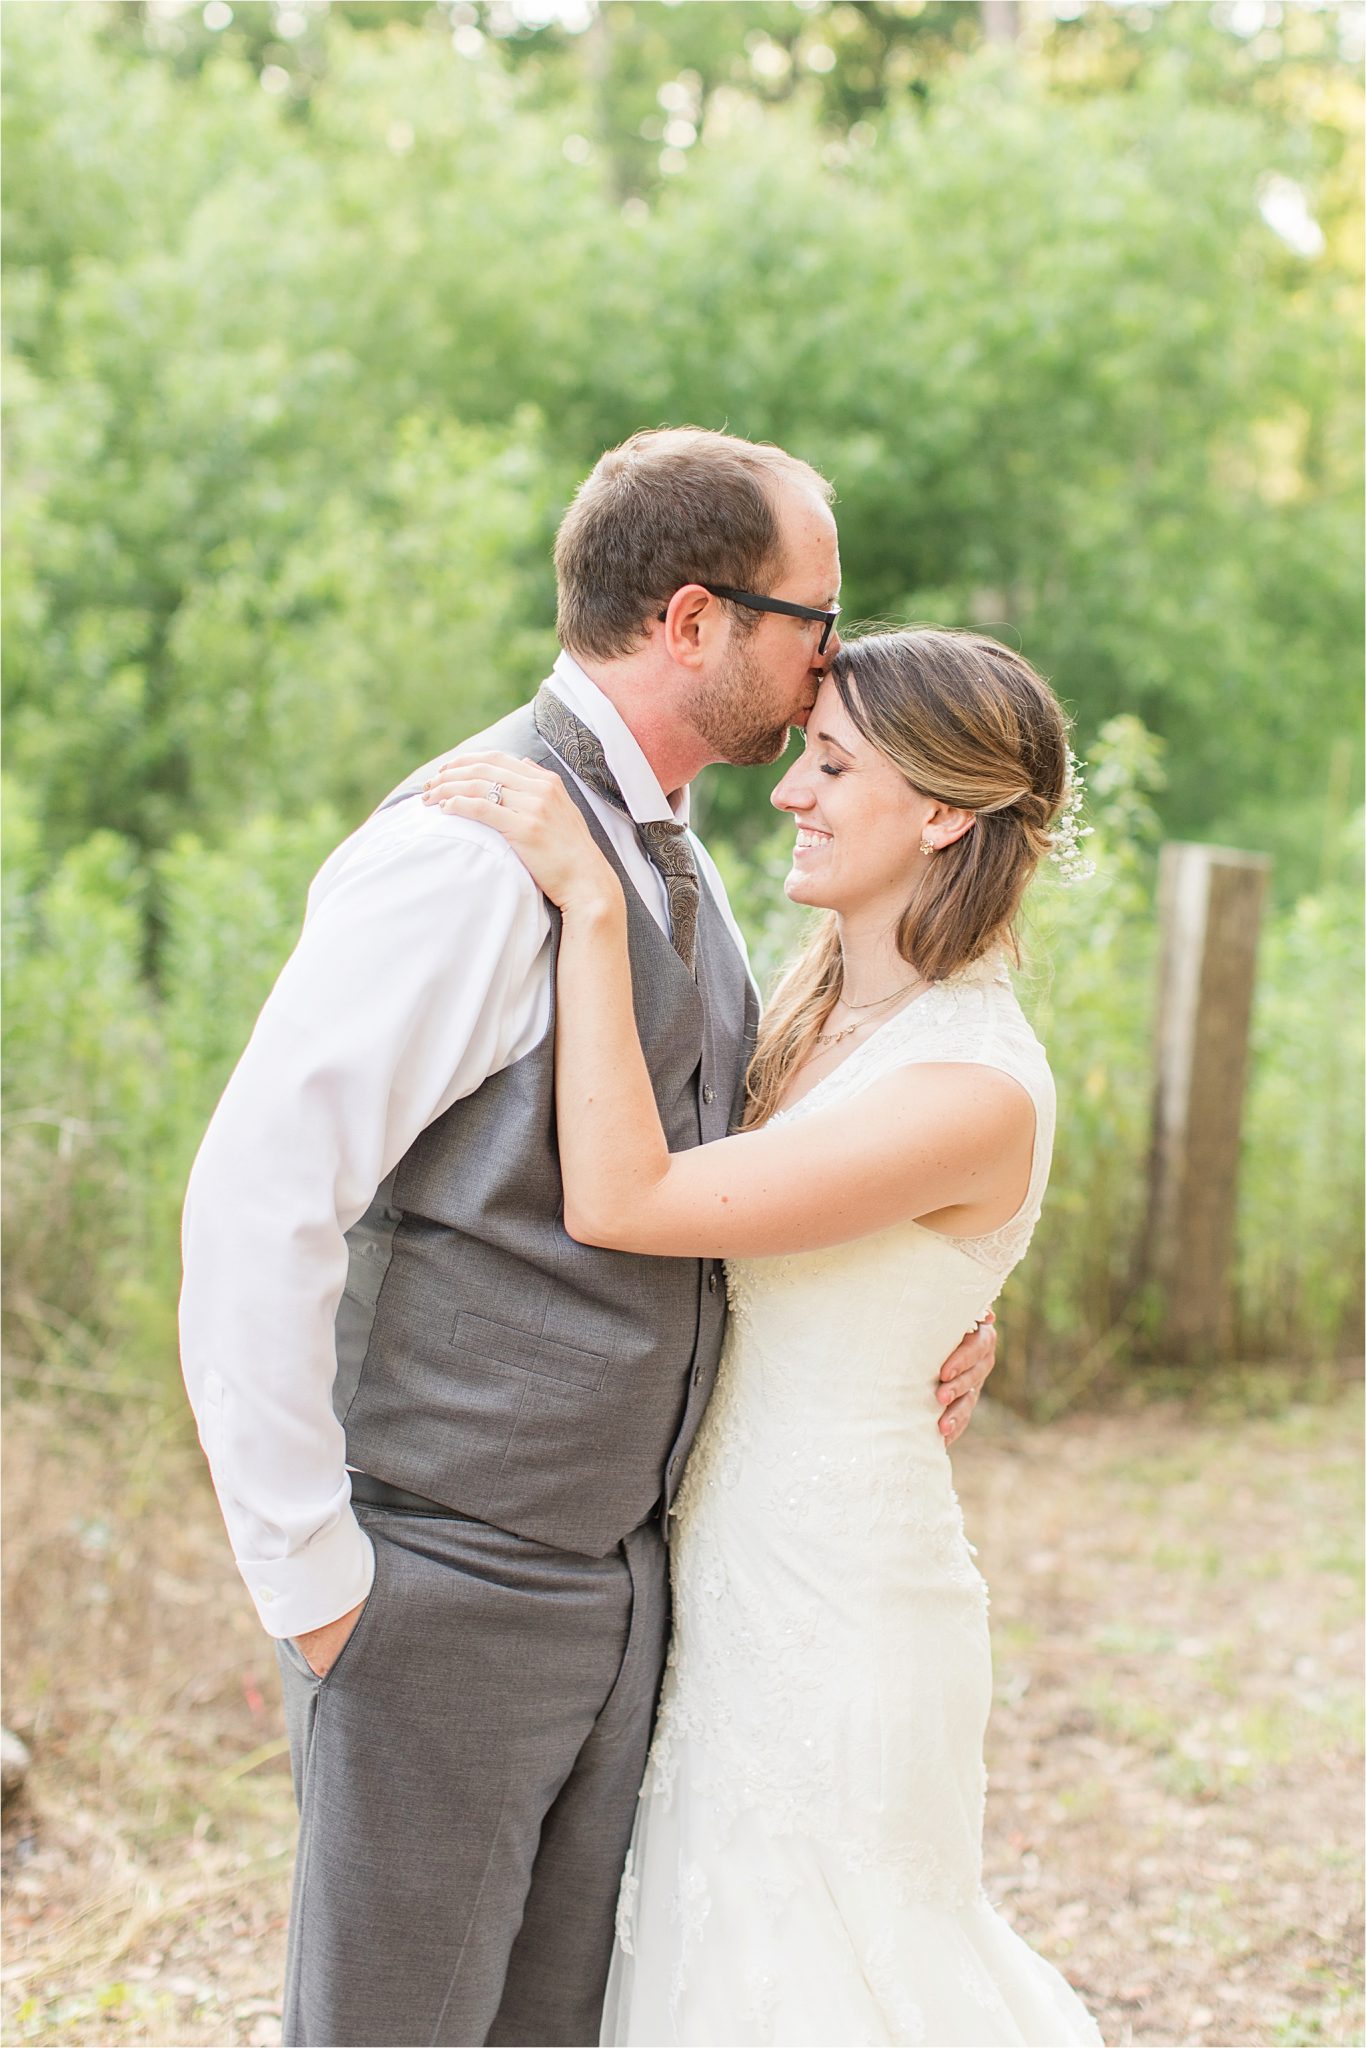 Precious bride and groom shots-photos-grey groomsmen suit-vest-bride and groom